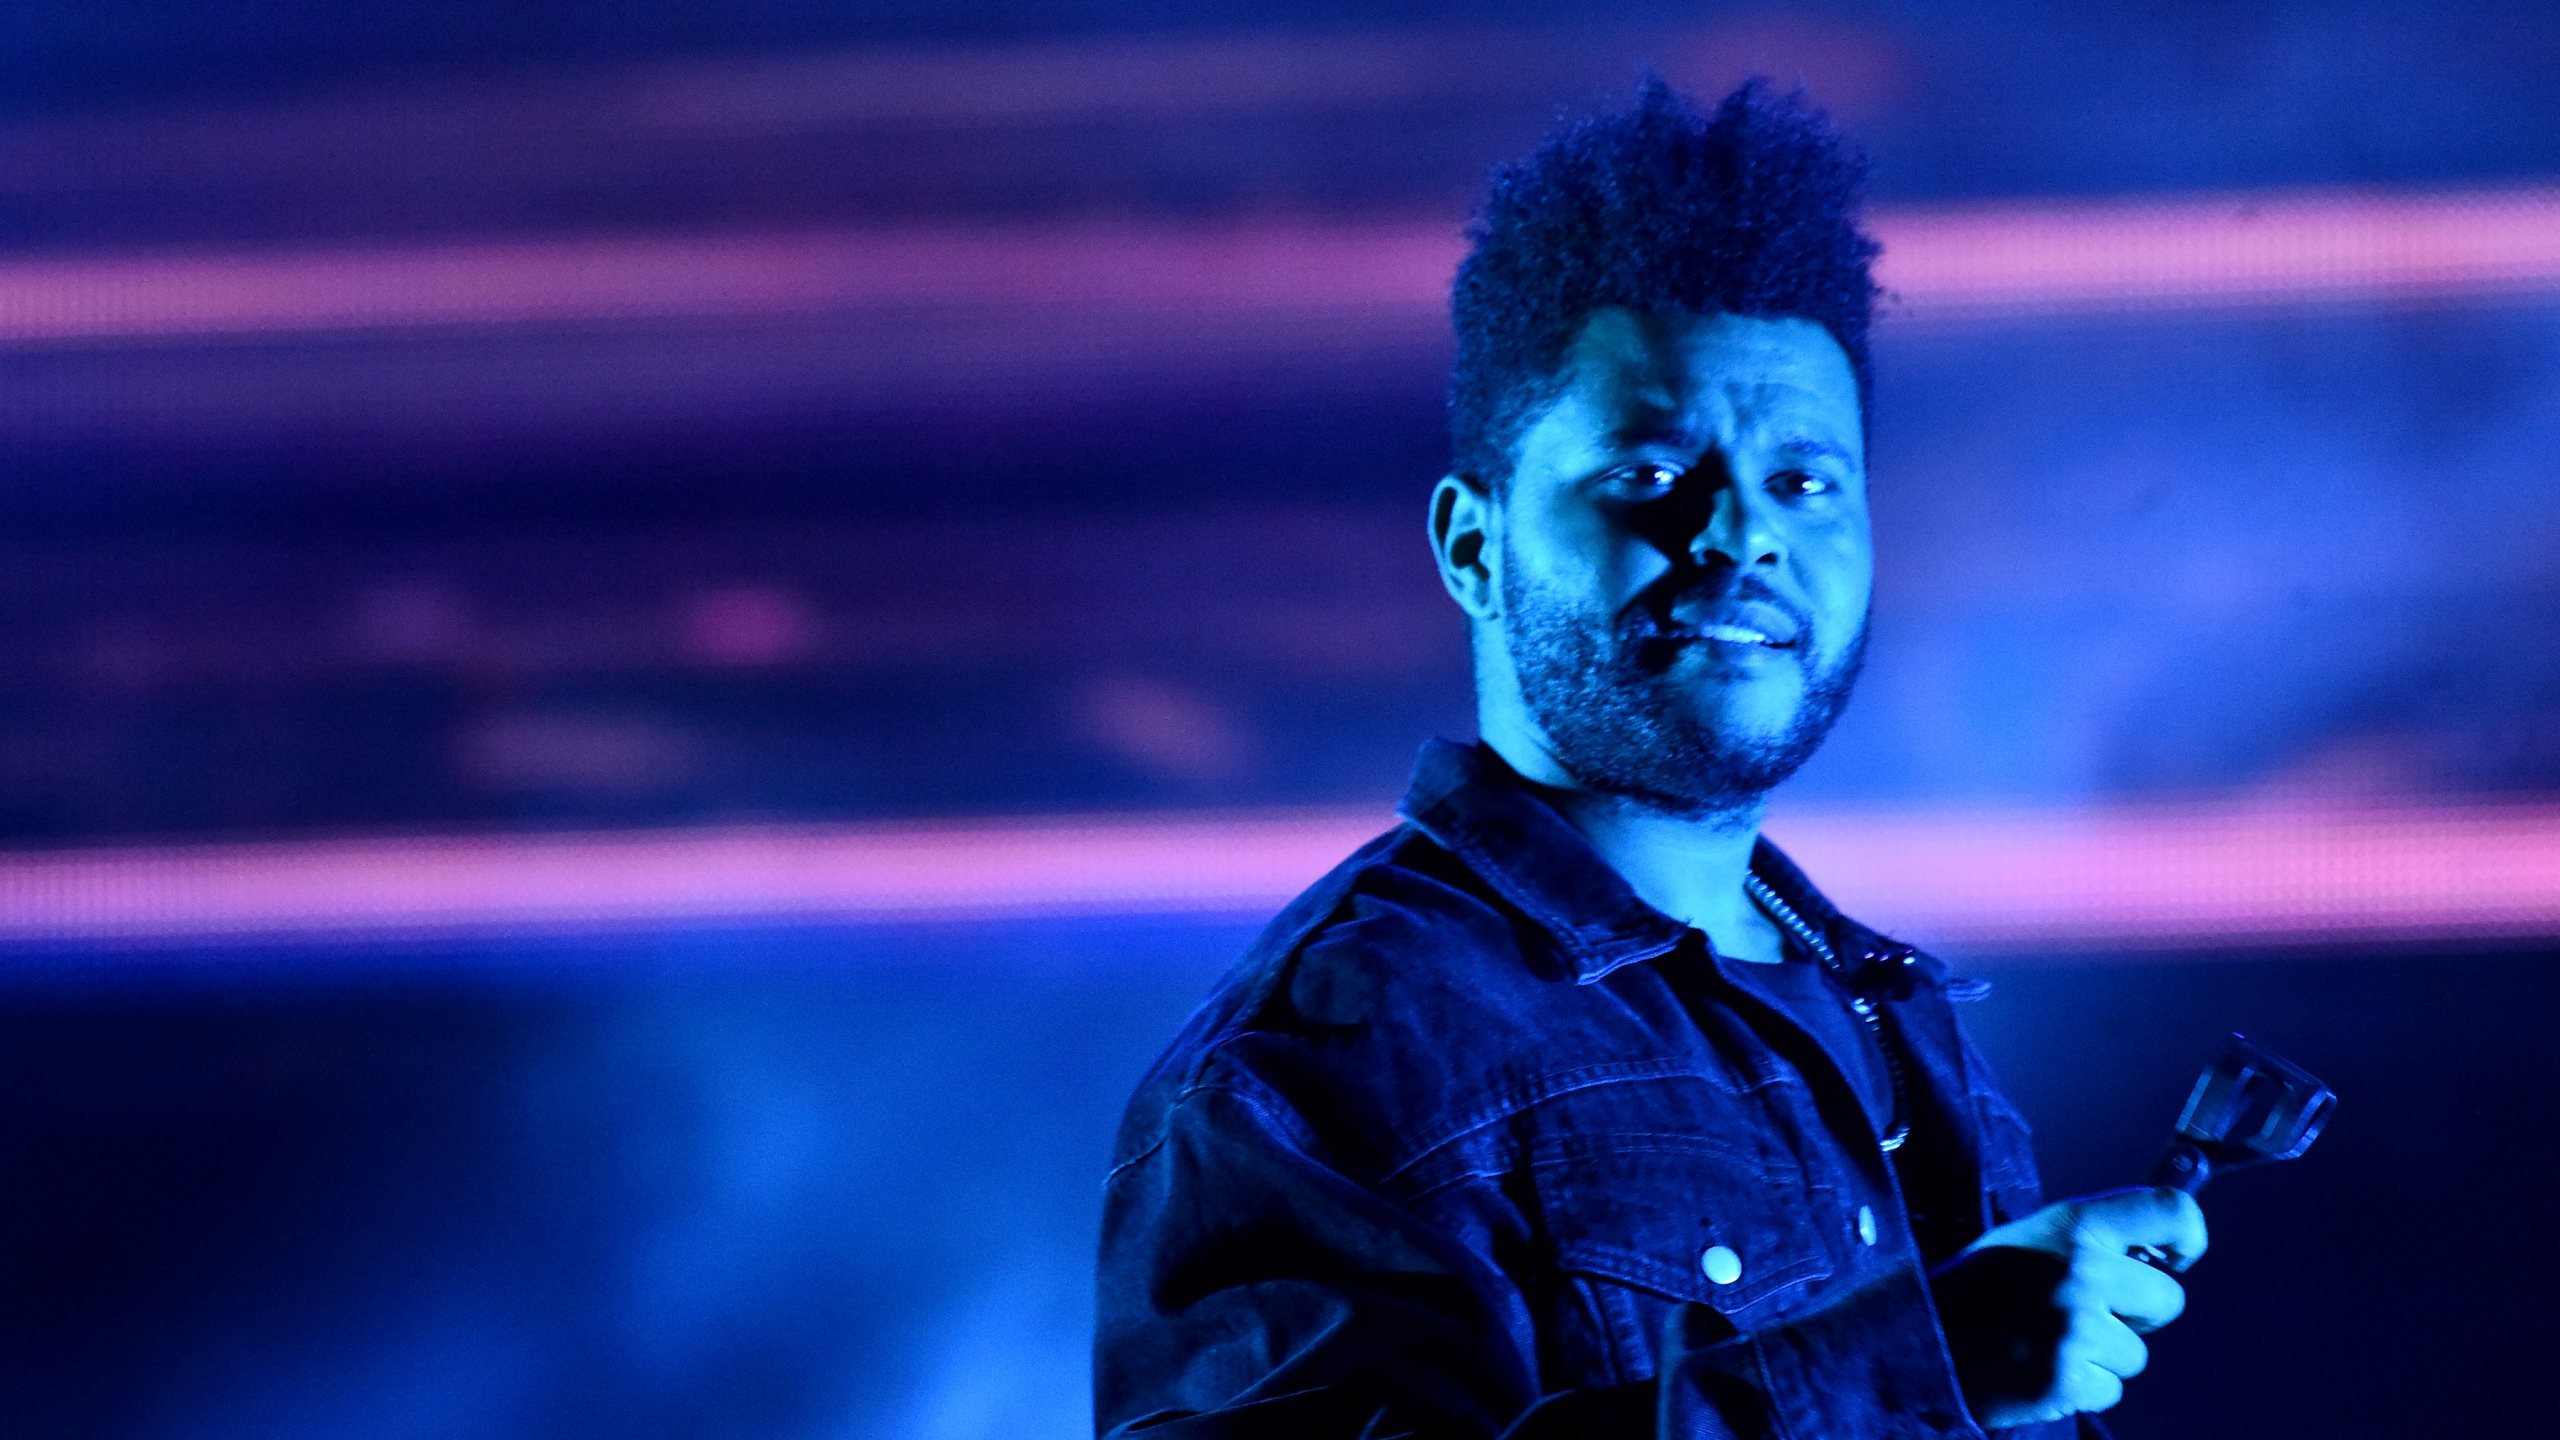 Esta será a terceira atuação de The Weeknd em Portugal. Em 2012, atuou no festival Primavera Sound, no Porto, e em 2017 no festival NOS Alive, em Oeiras